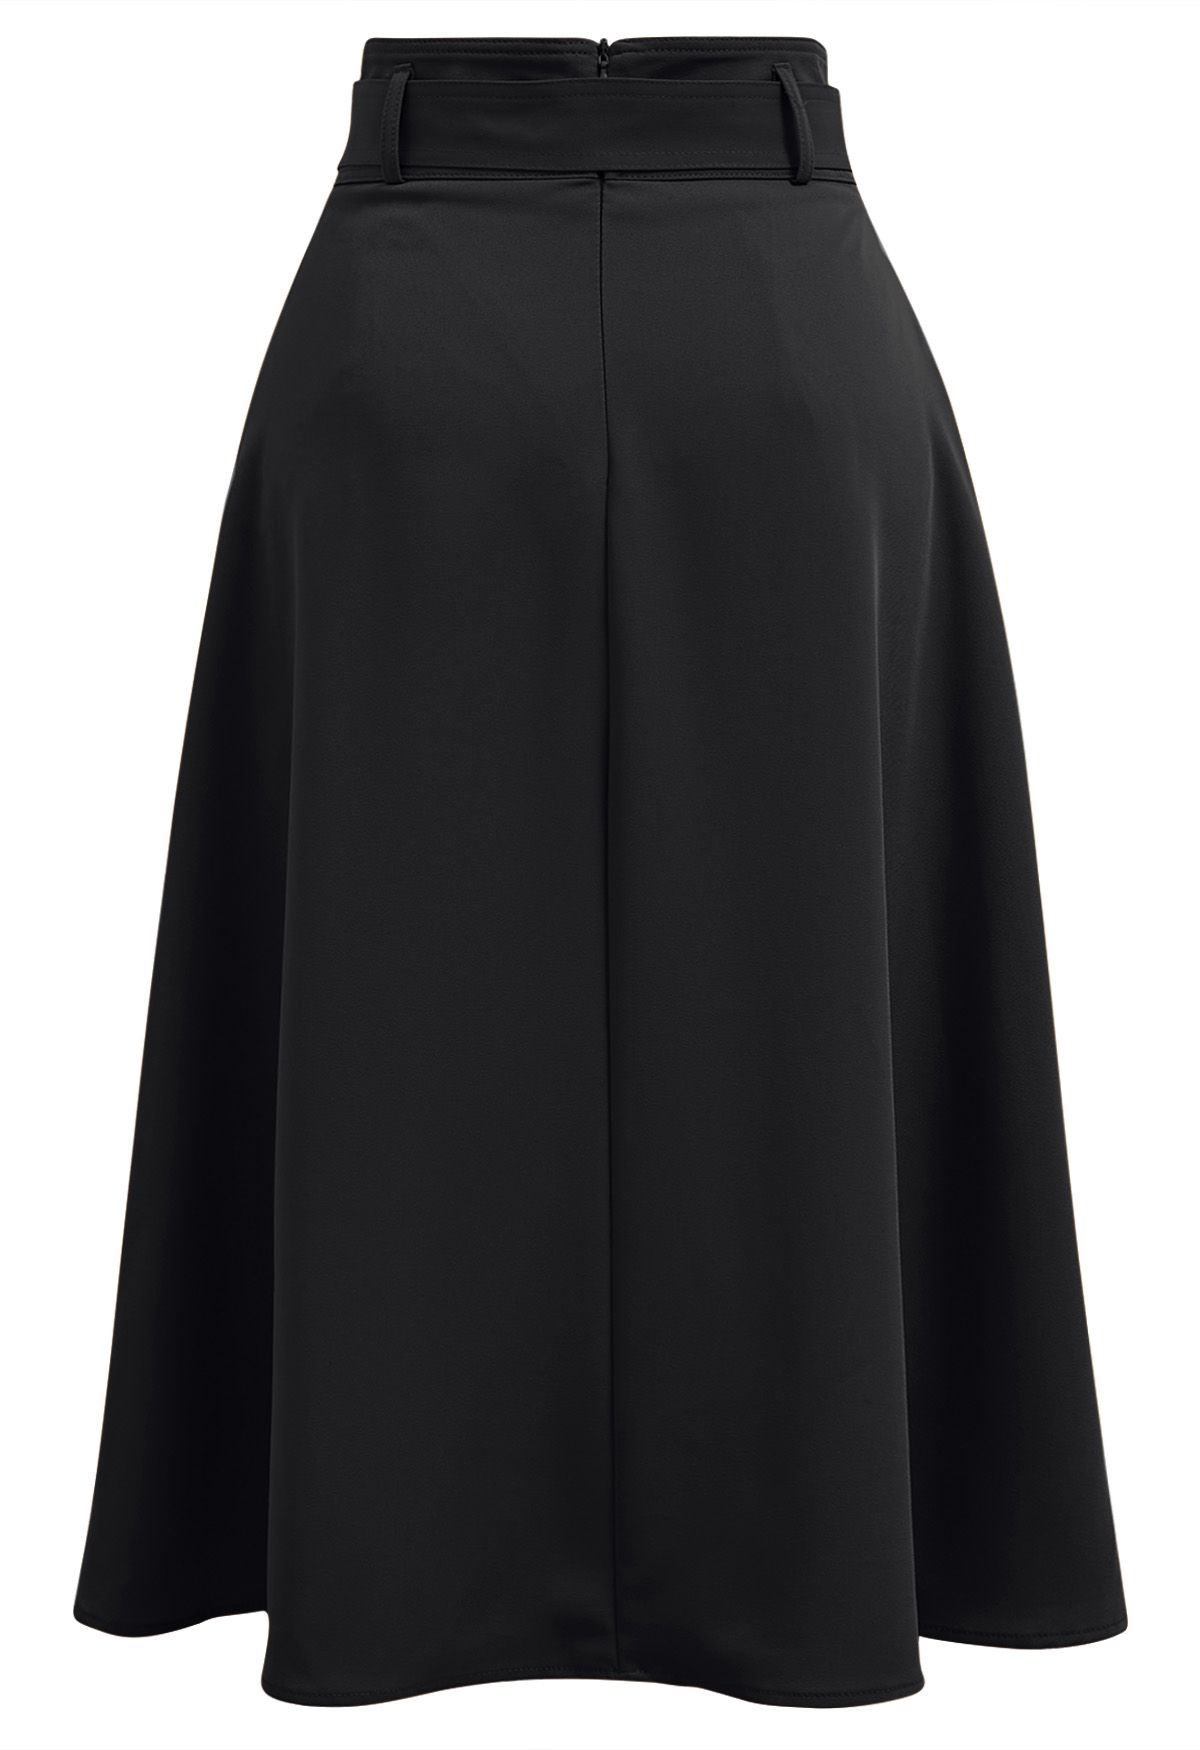 Falda midi con cinturón plisado en negro Refined